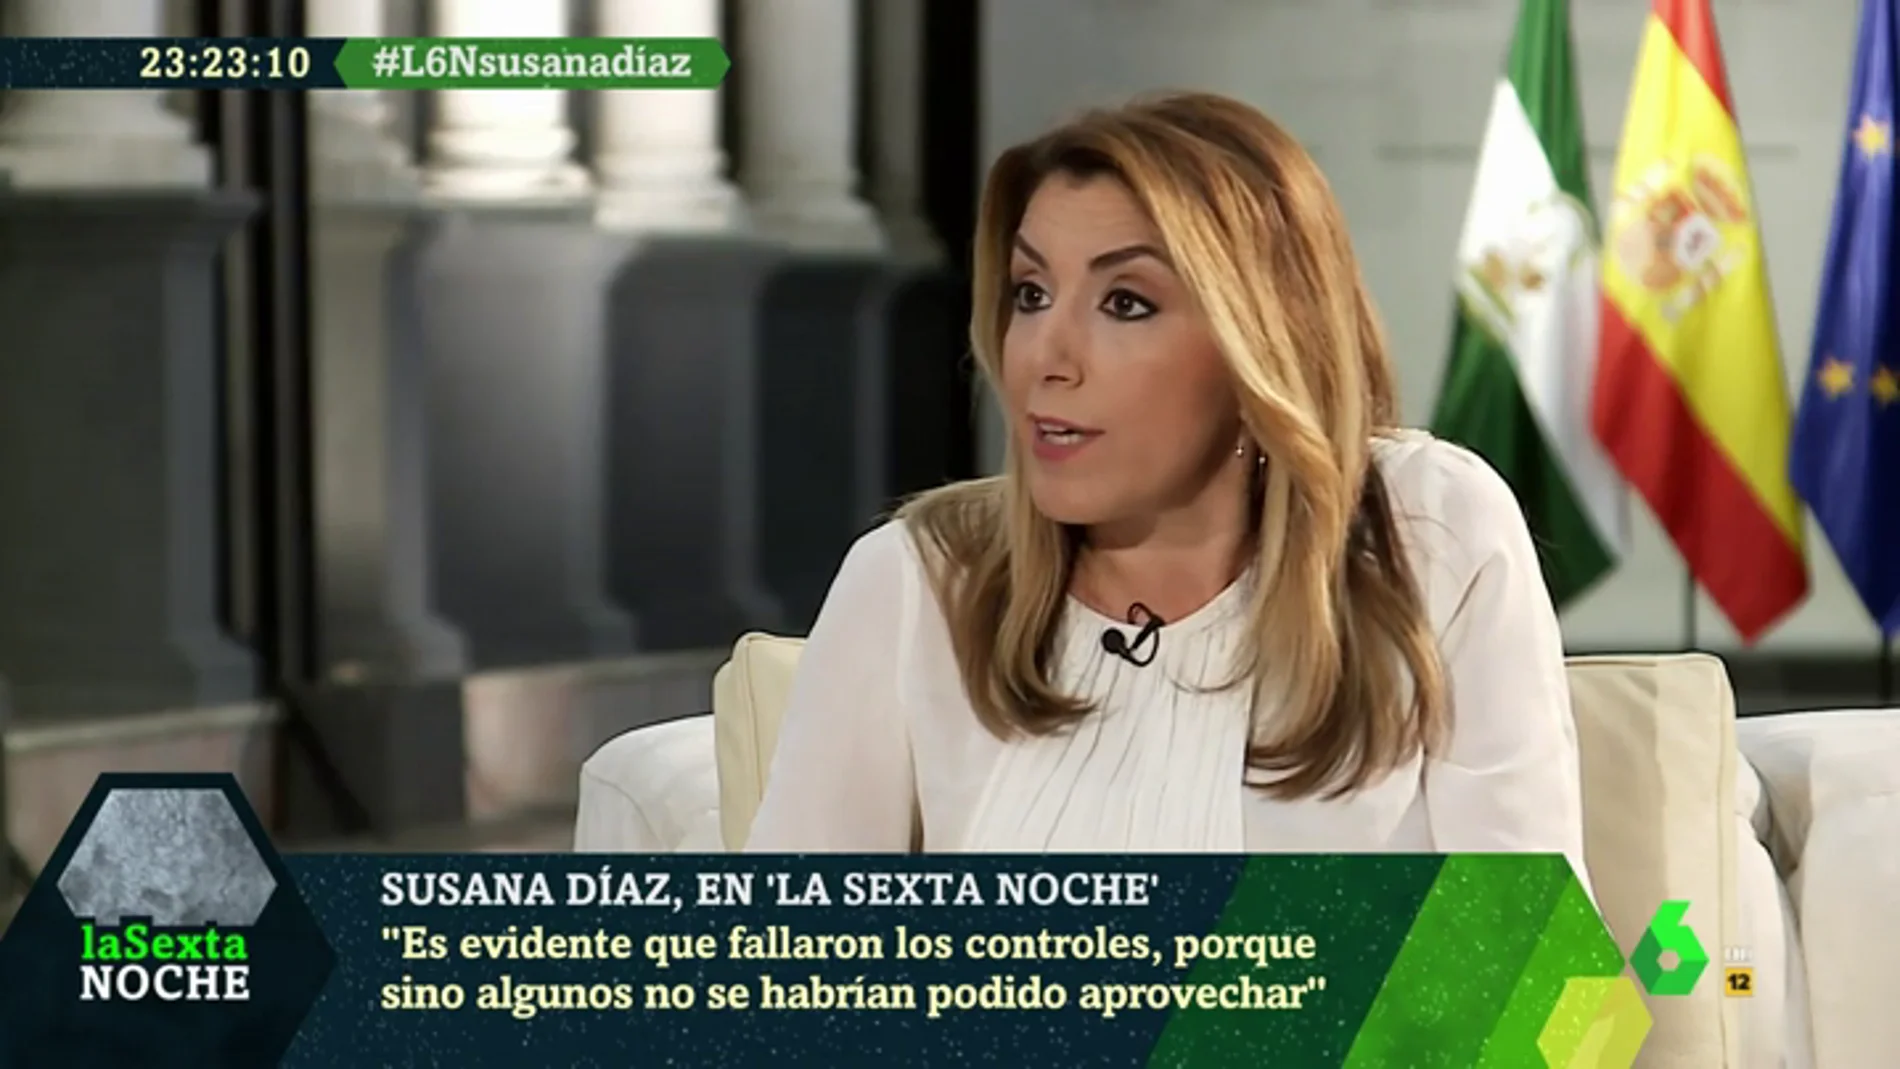 Susana Díaz hace autocrítica sobre el caso de los ERE: "Fallaron los controles evidentemente"